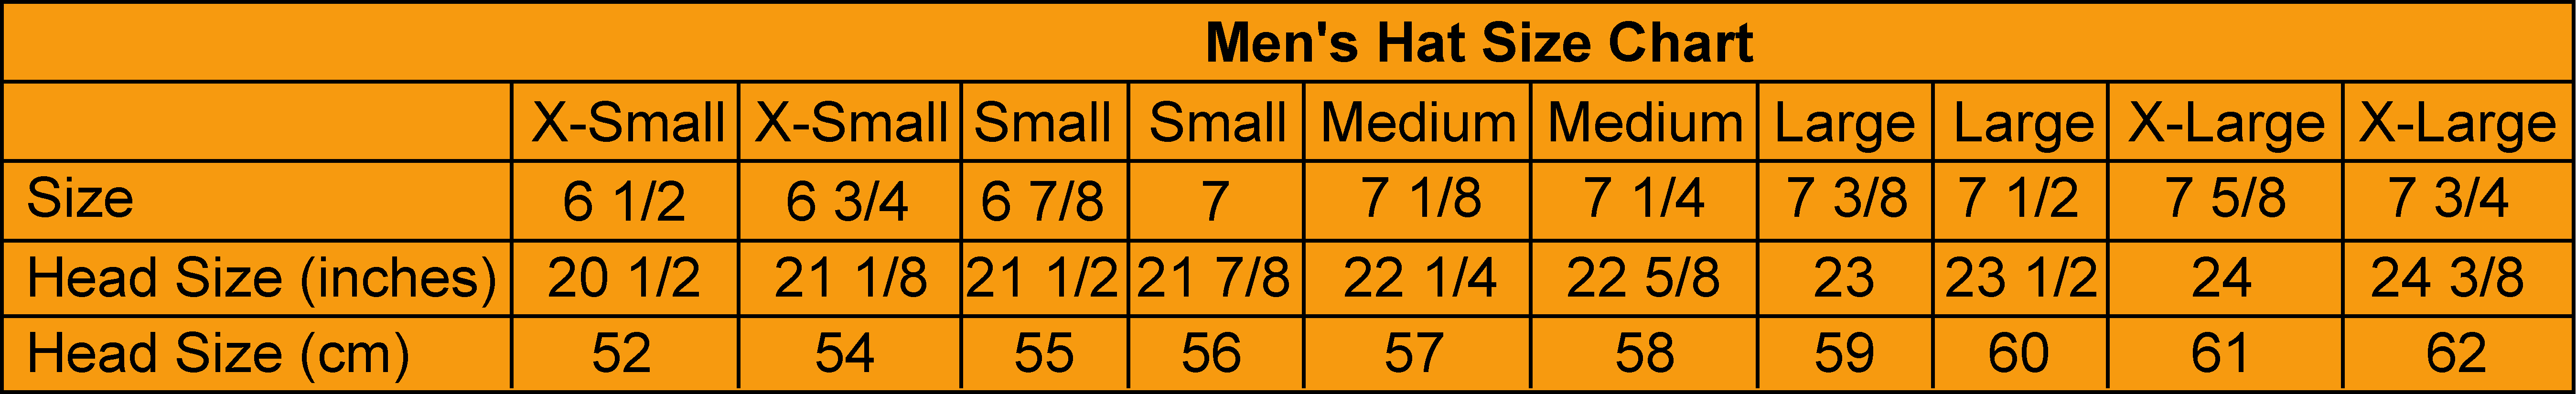 Men's clothes size guide